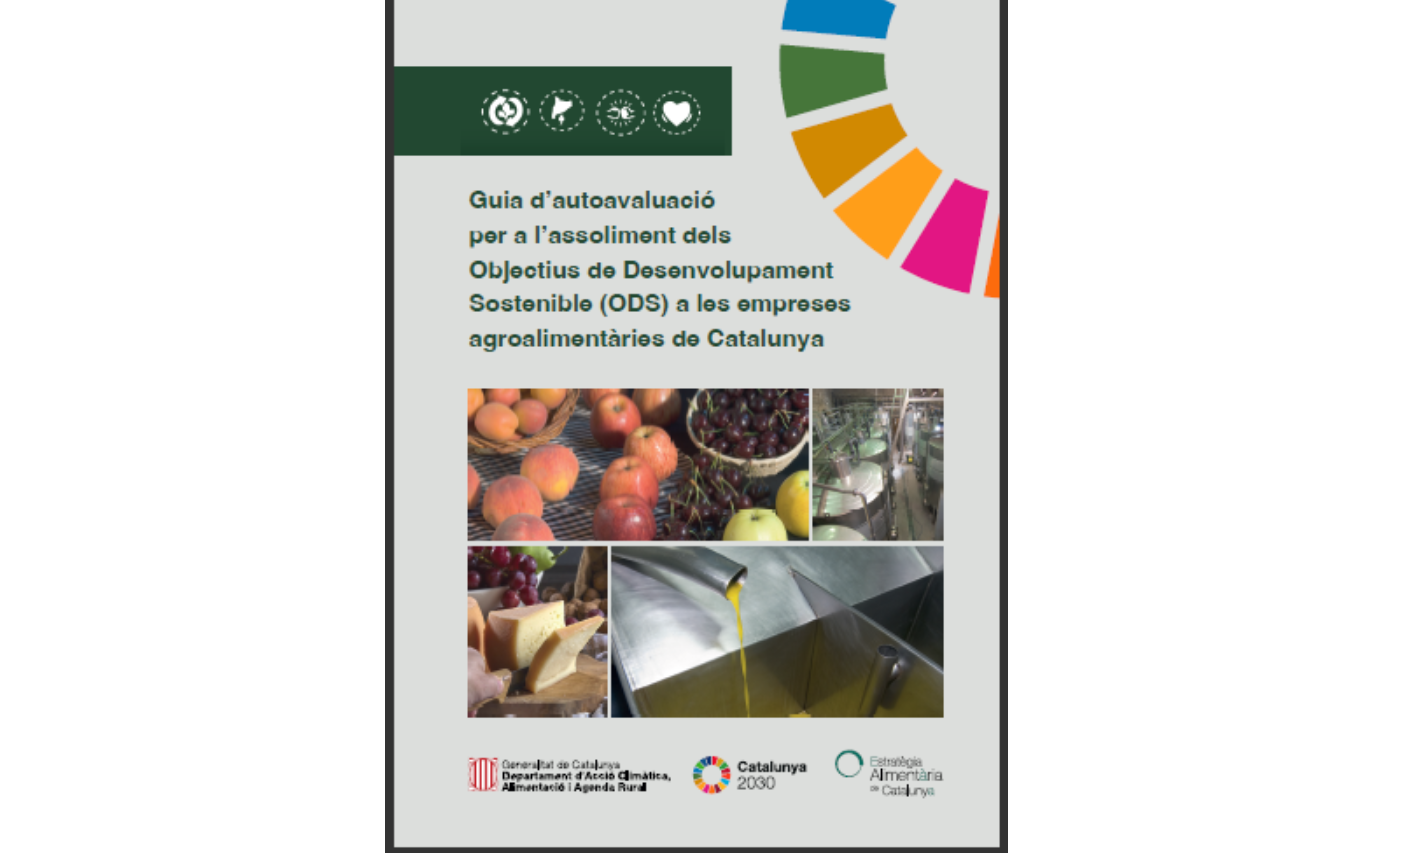 Guia d’autoavaluació per a l’assoliment dels ODS a les empreses agroalimentàries de Catalunya